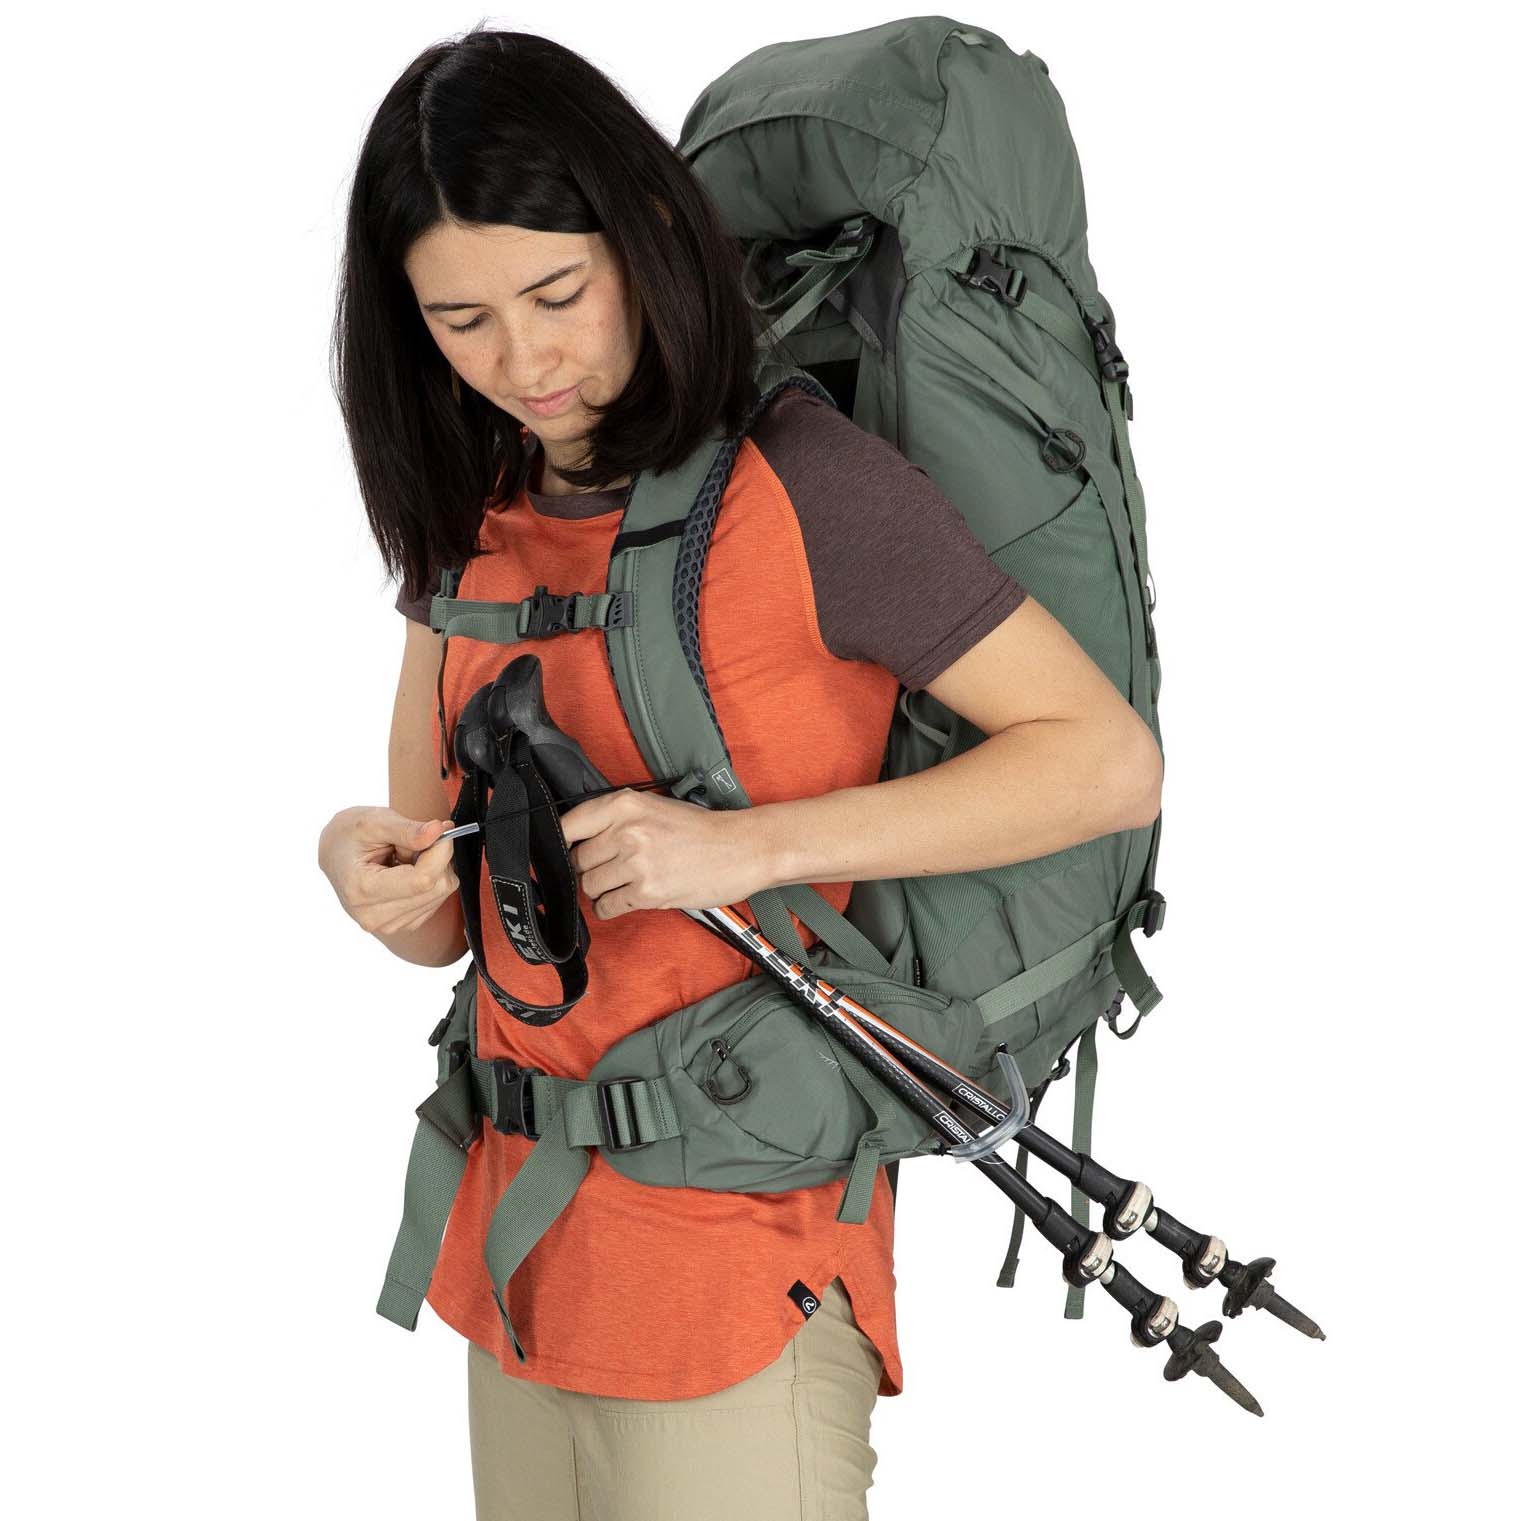 Osprey Kyte 48 Women's Trekking Backpack